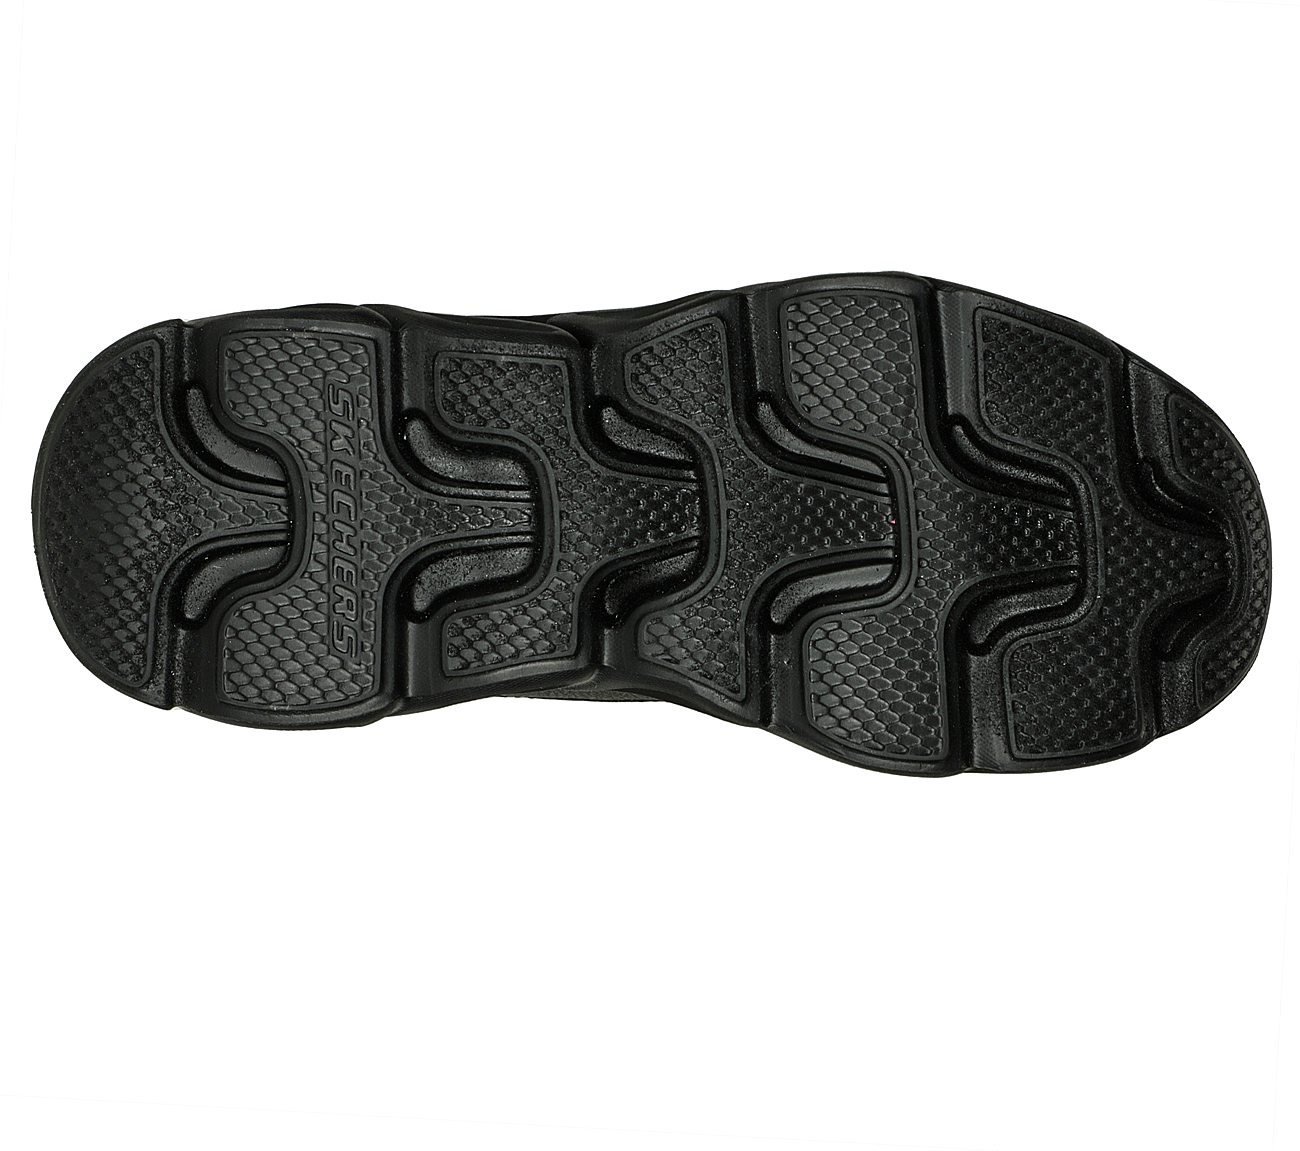 FLEX GLIDE, BLACK/MULTI Footwear Bottom View